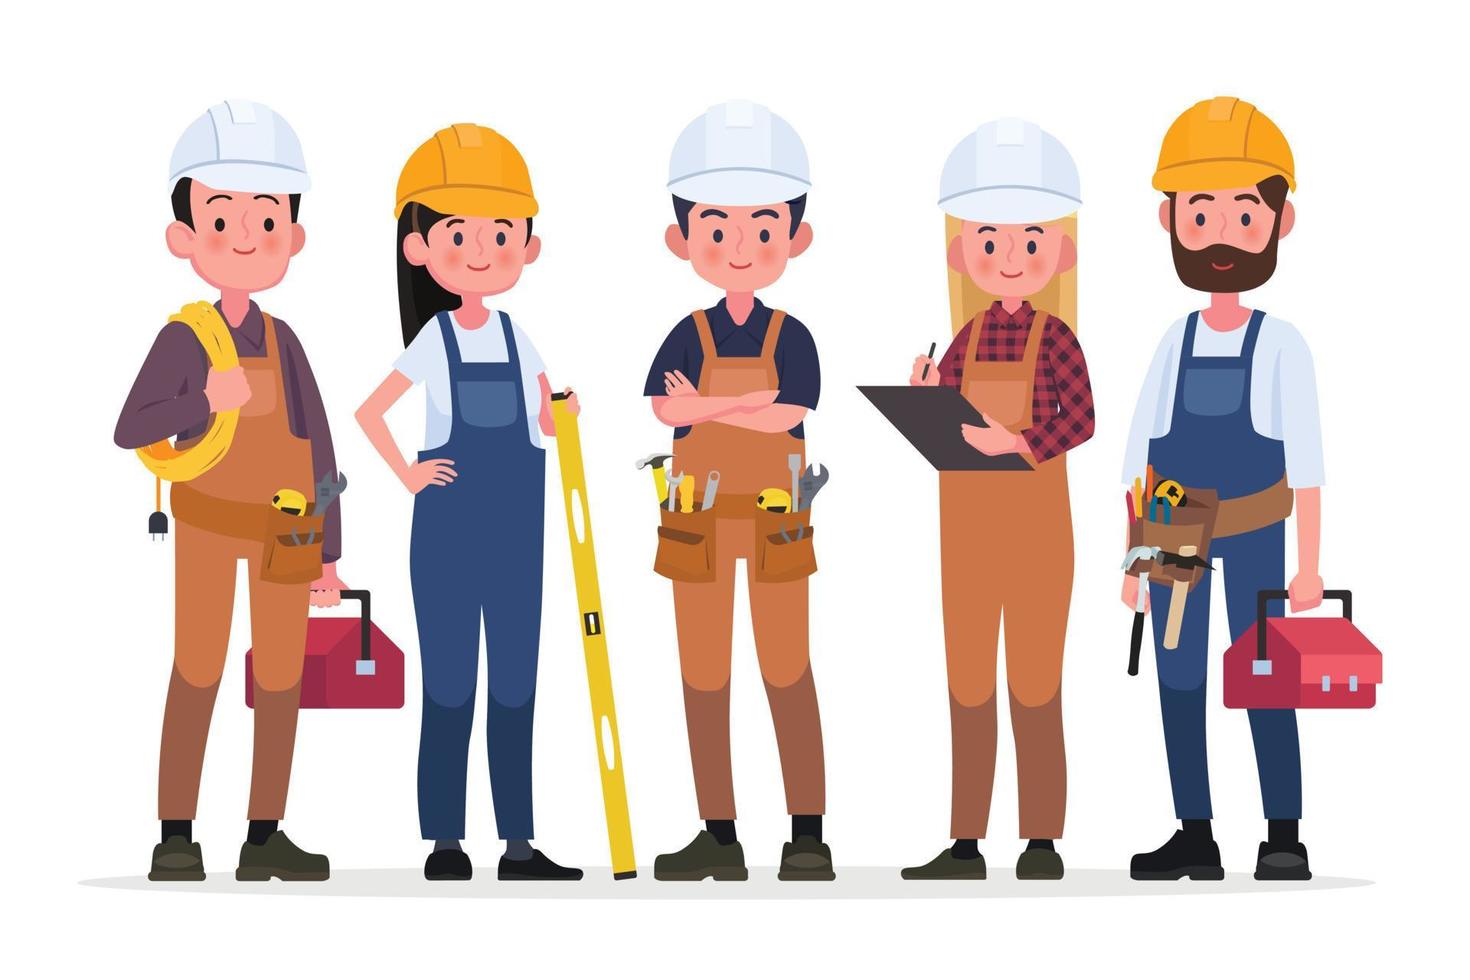 technici mensengroep, ingenieur en bouw. industriële ingenieurs werknemers, bouwers karakters geïsoleerde cartoon vectorillustratie vector